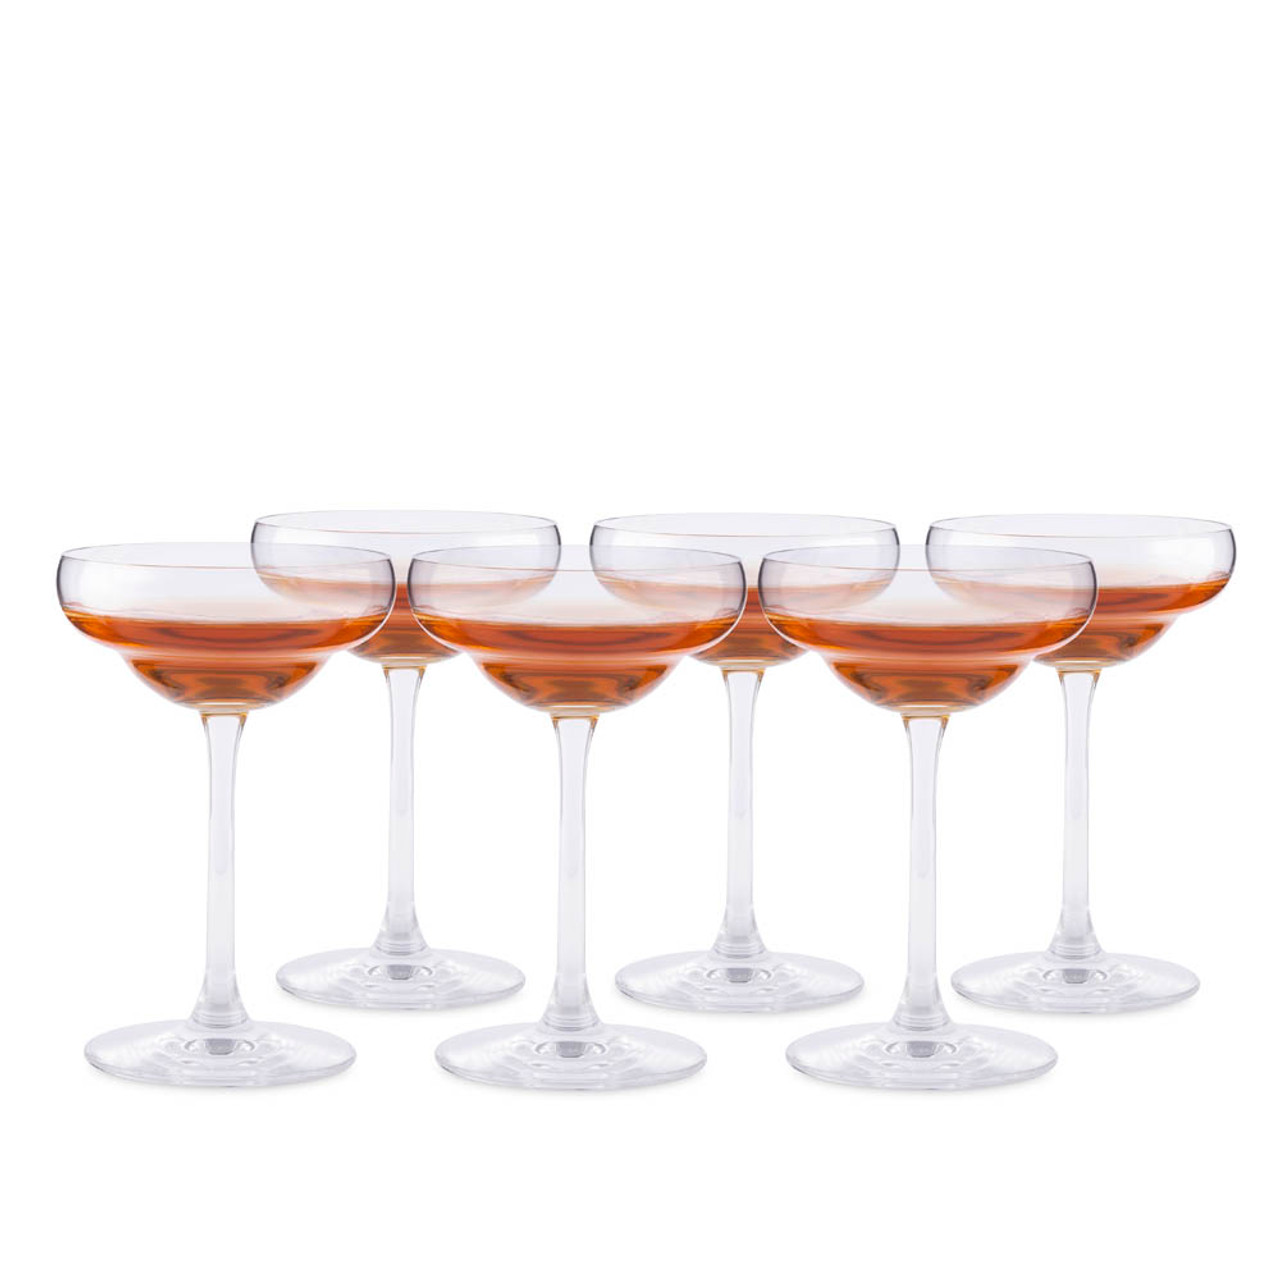 Elle Decor Highball Glasses | Set of 4 Elegant Tom Collins Glasses,10 oz -  Pink